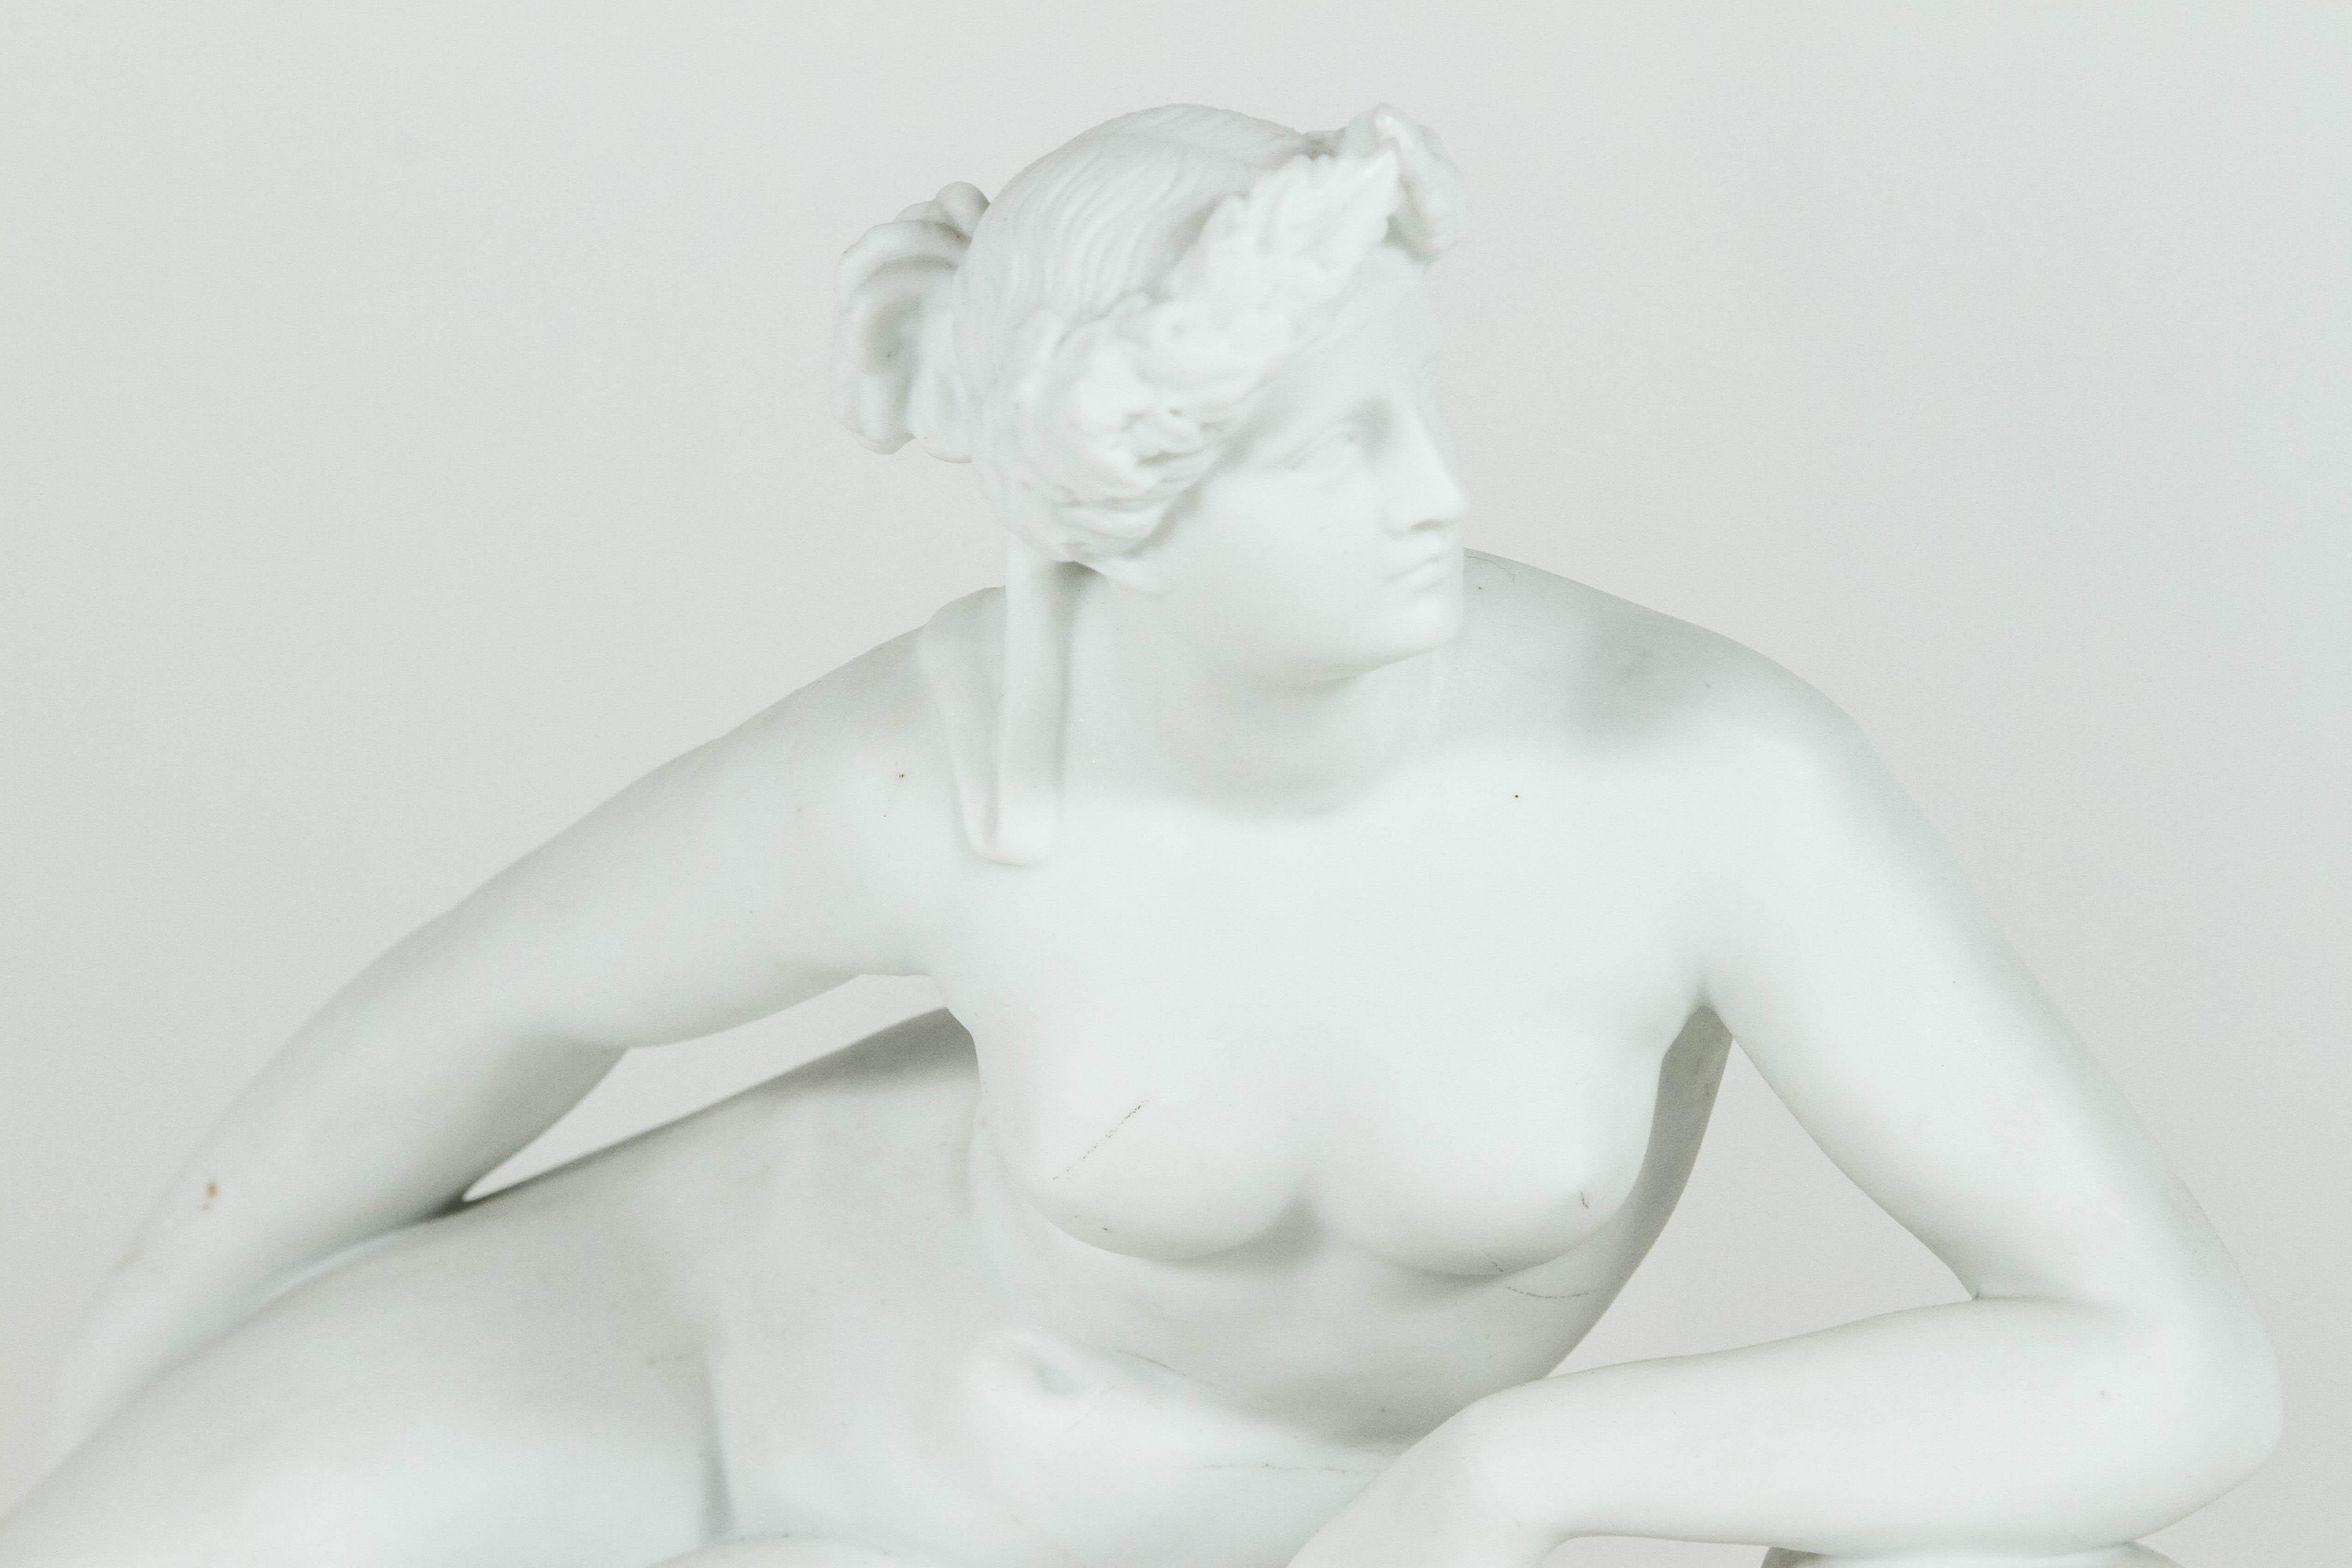 Exquise sculpture figurative en porcelaine représentant une femme nue aux traits gréco-romains classiques, allongée au sommet d'une panthère. La femme arbore une coiffure complexe qui était très populaire chez les femmes romaines. La panthère porte